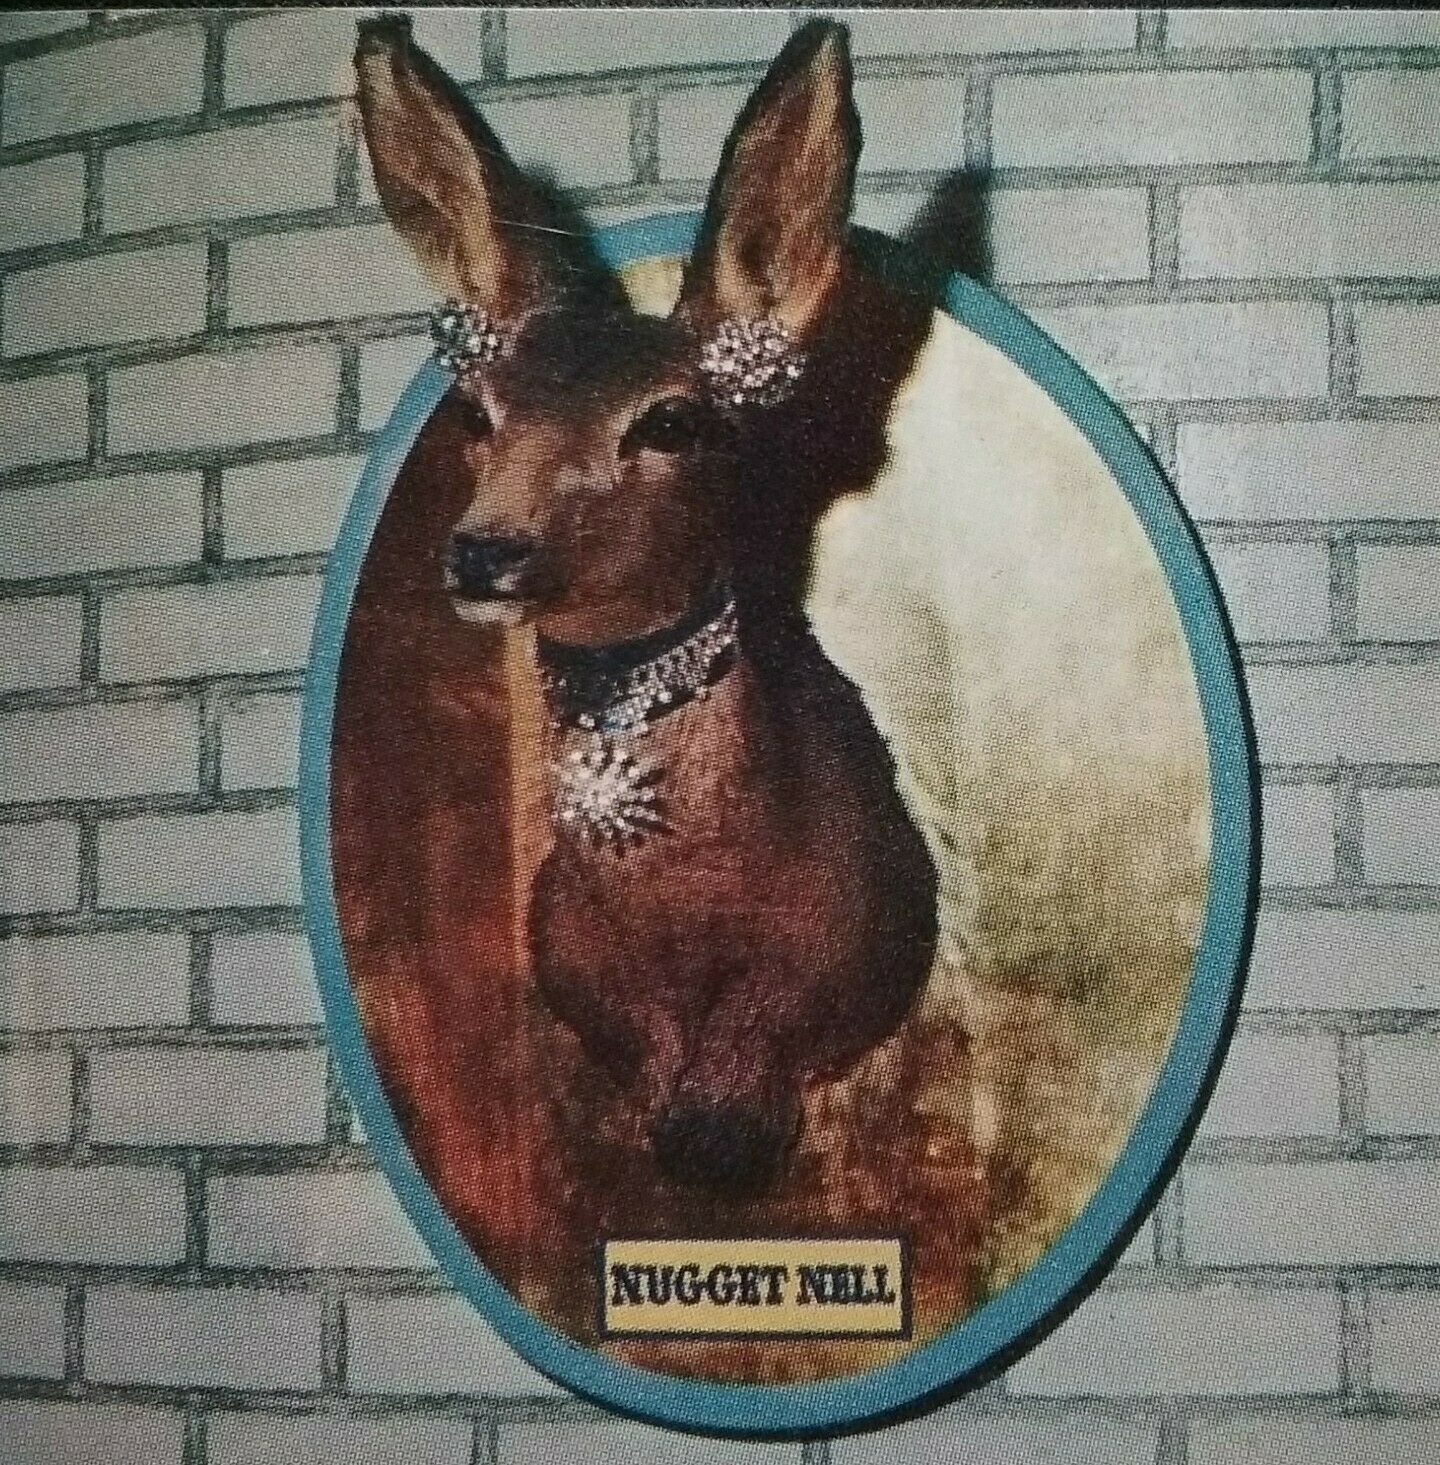 Las Vegas Nv El Rancho Casino Nugget Nell Mounted Deer Head Defunct Circa 1950s